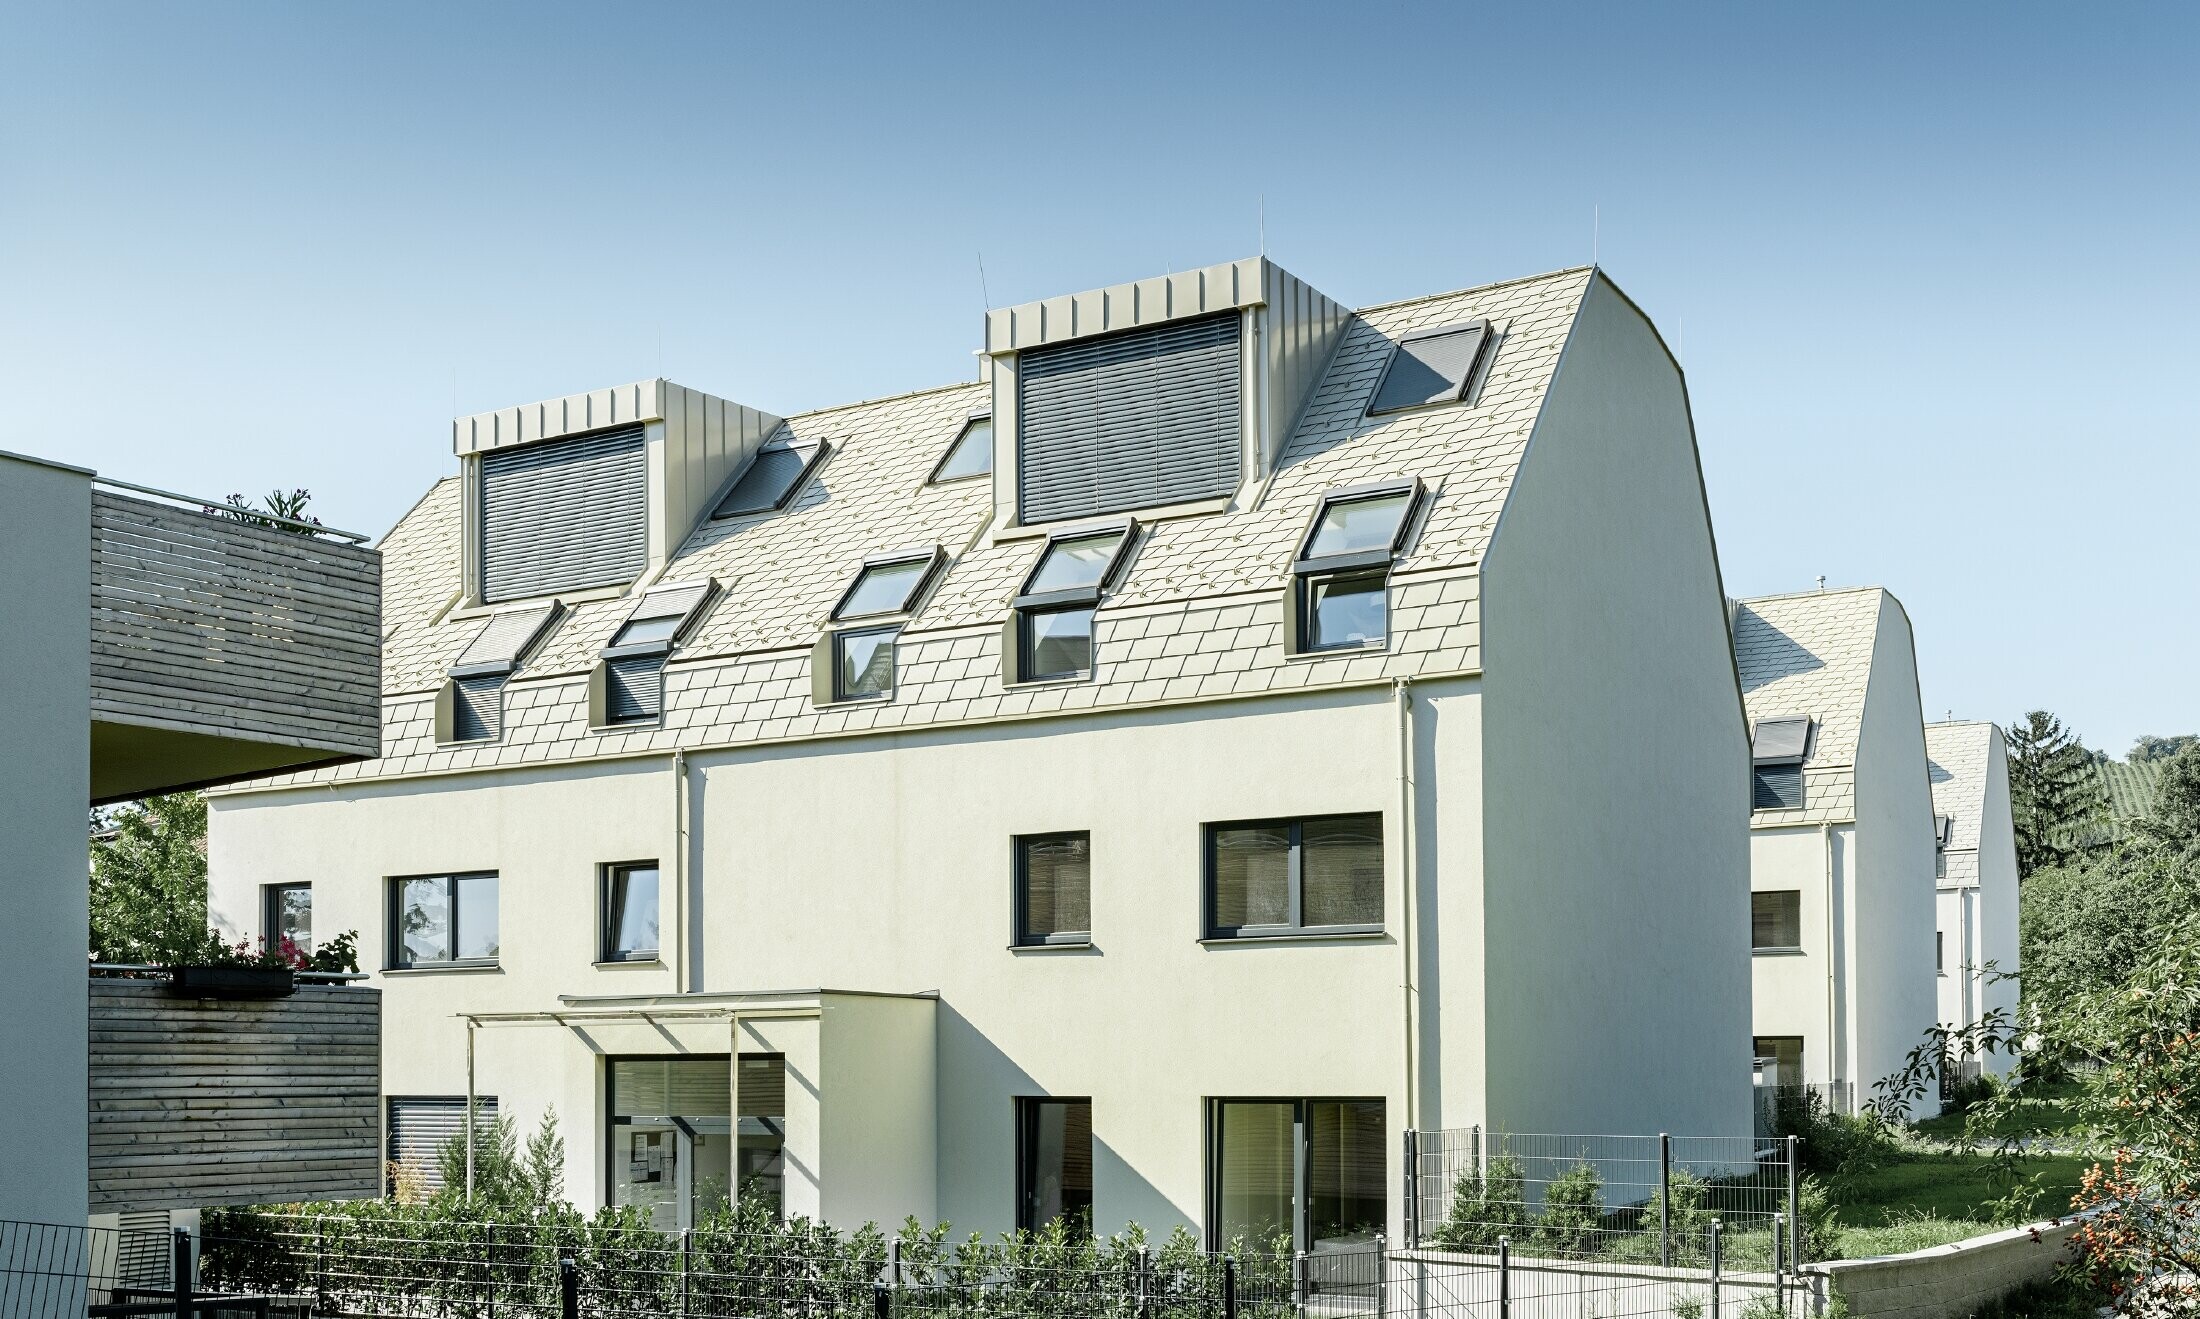 Nov stanovanjski kompleks z veliko aluminijasto strešno površino in strešnimi okni